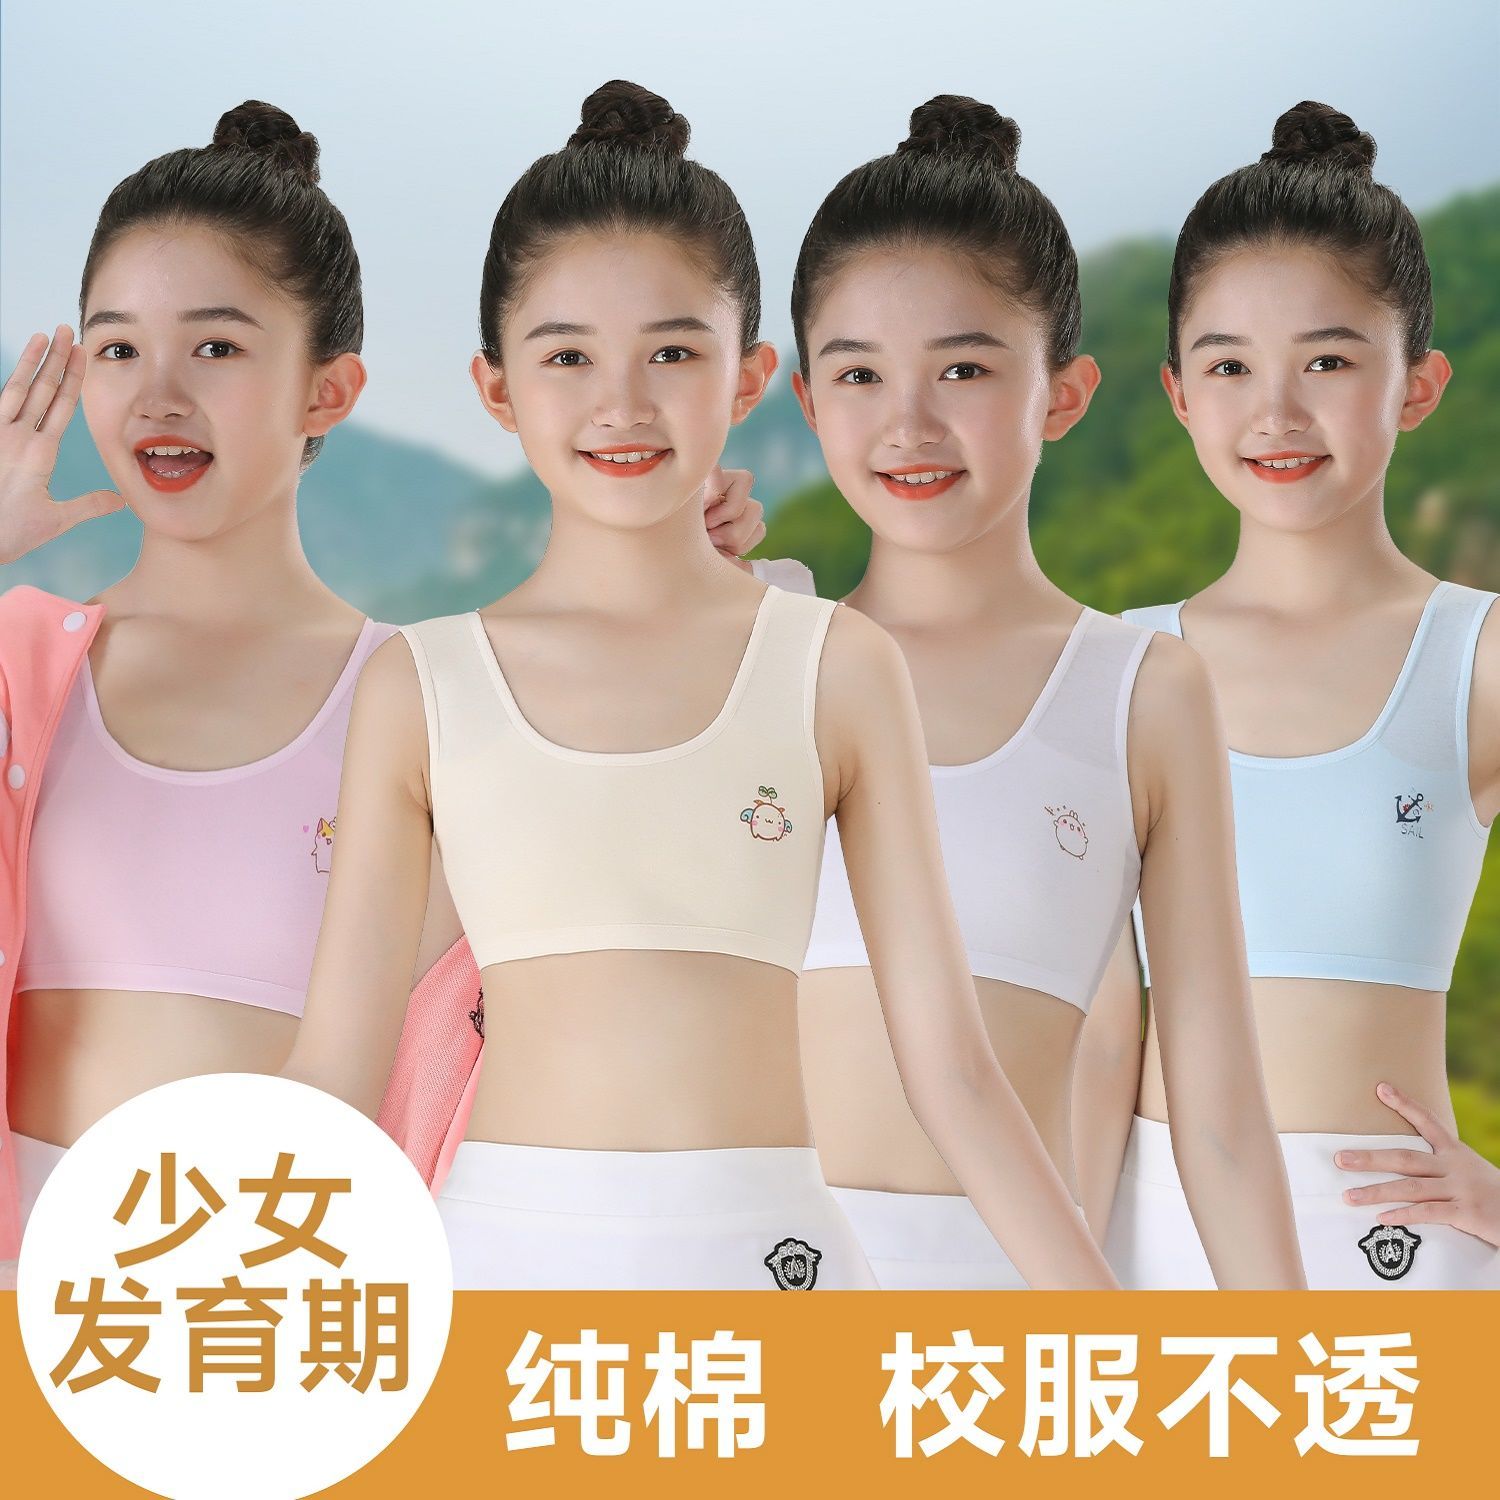 8-14 years old children‘s vest development primary school students nipple coverage pure cotton girls‘ underwear